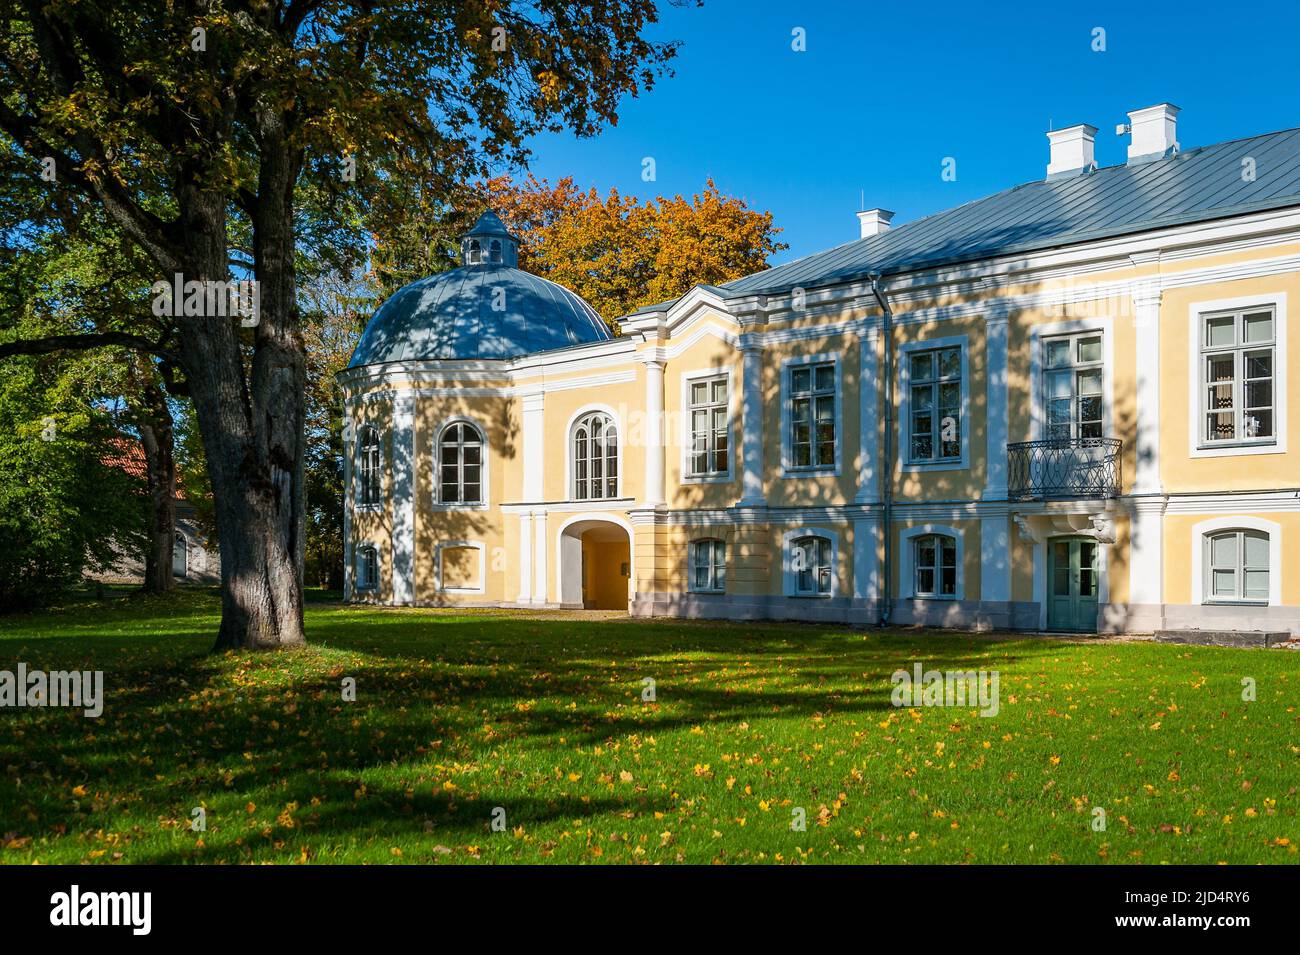 Das sonnige Herbstwetter zog Touristen und Besucher an, das wunderschöne Herrenhaus Vääna in Estland zu genießen. Erbaut im 18.. Jahrhundert. Im Hauptgebäude befindet sich jetzt ein Scho Stockfoto